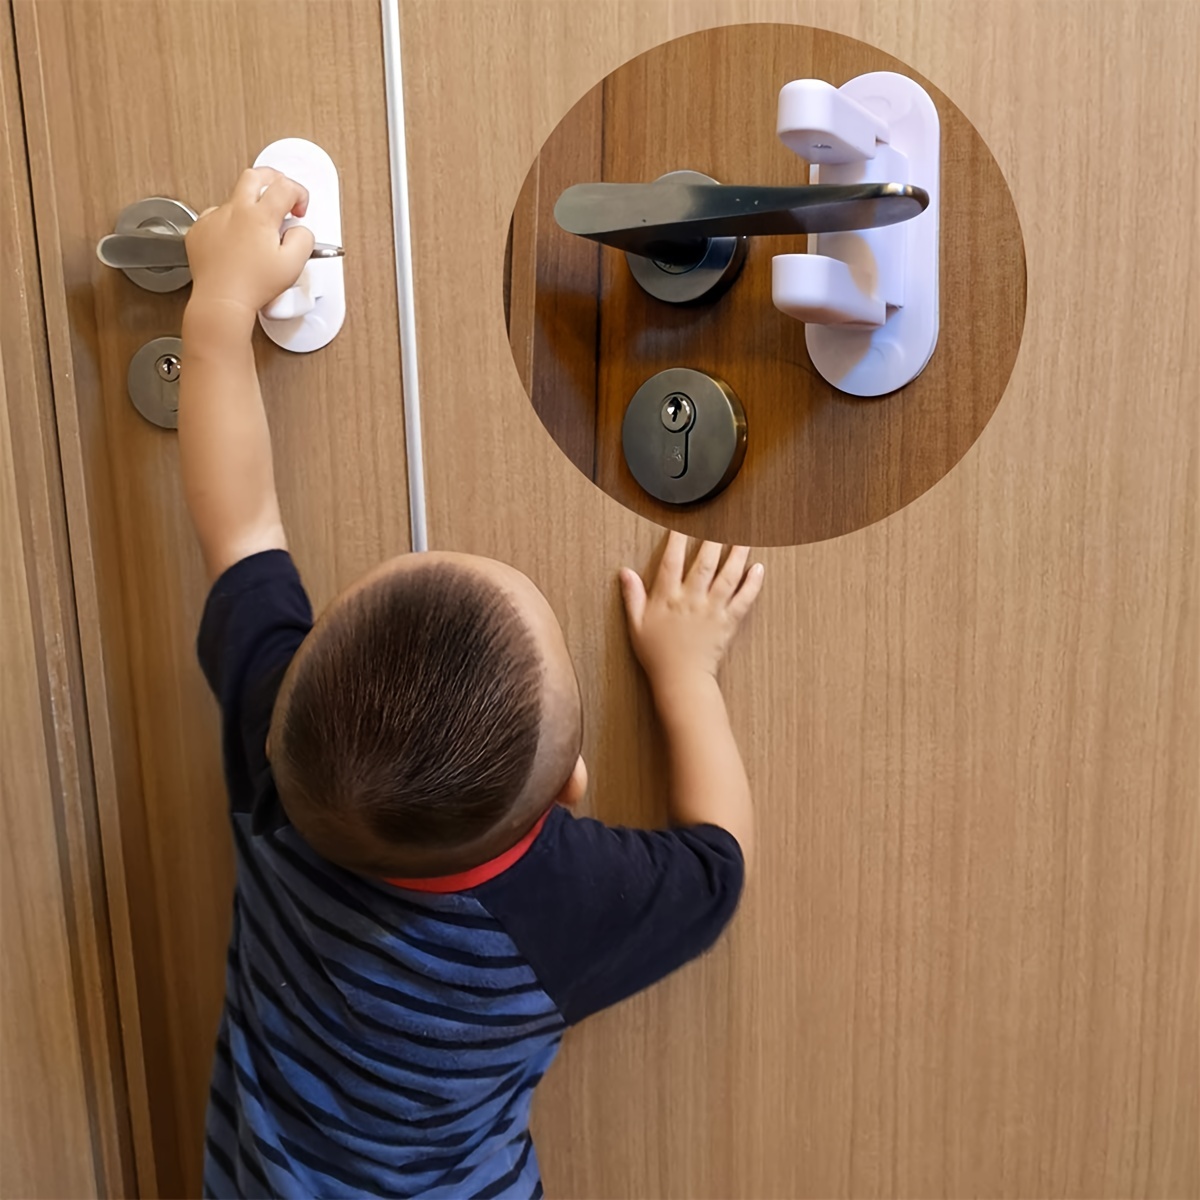 DOOR LOCK FOR Kids Adhesive Childproof Baby Safety Door Handle